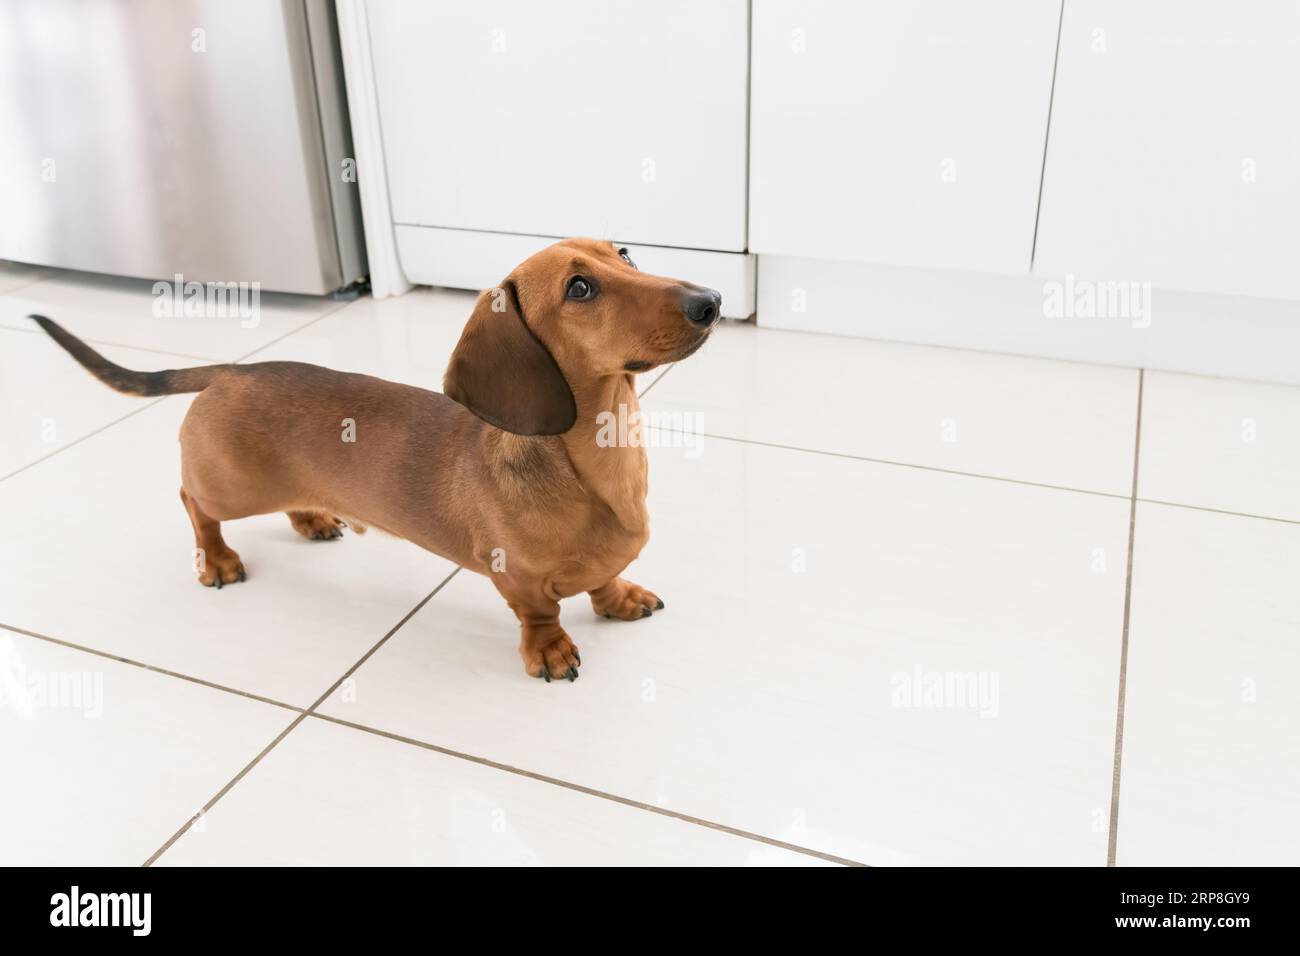 Cane Doxie Wiener in miniatura dachshund che guarda il proprietario all'interno della loro casa in attesa di essere nutrito Foto Stock